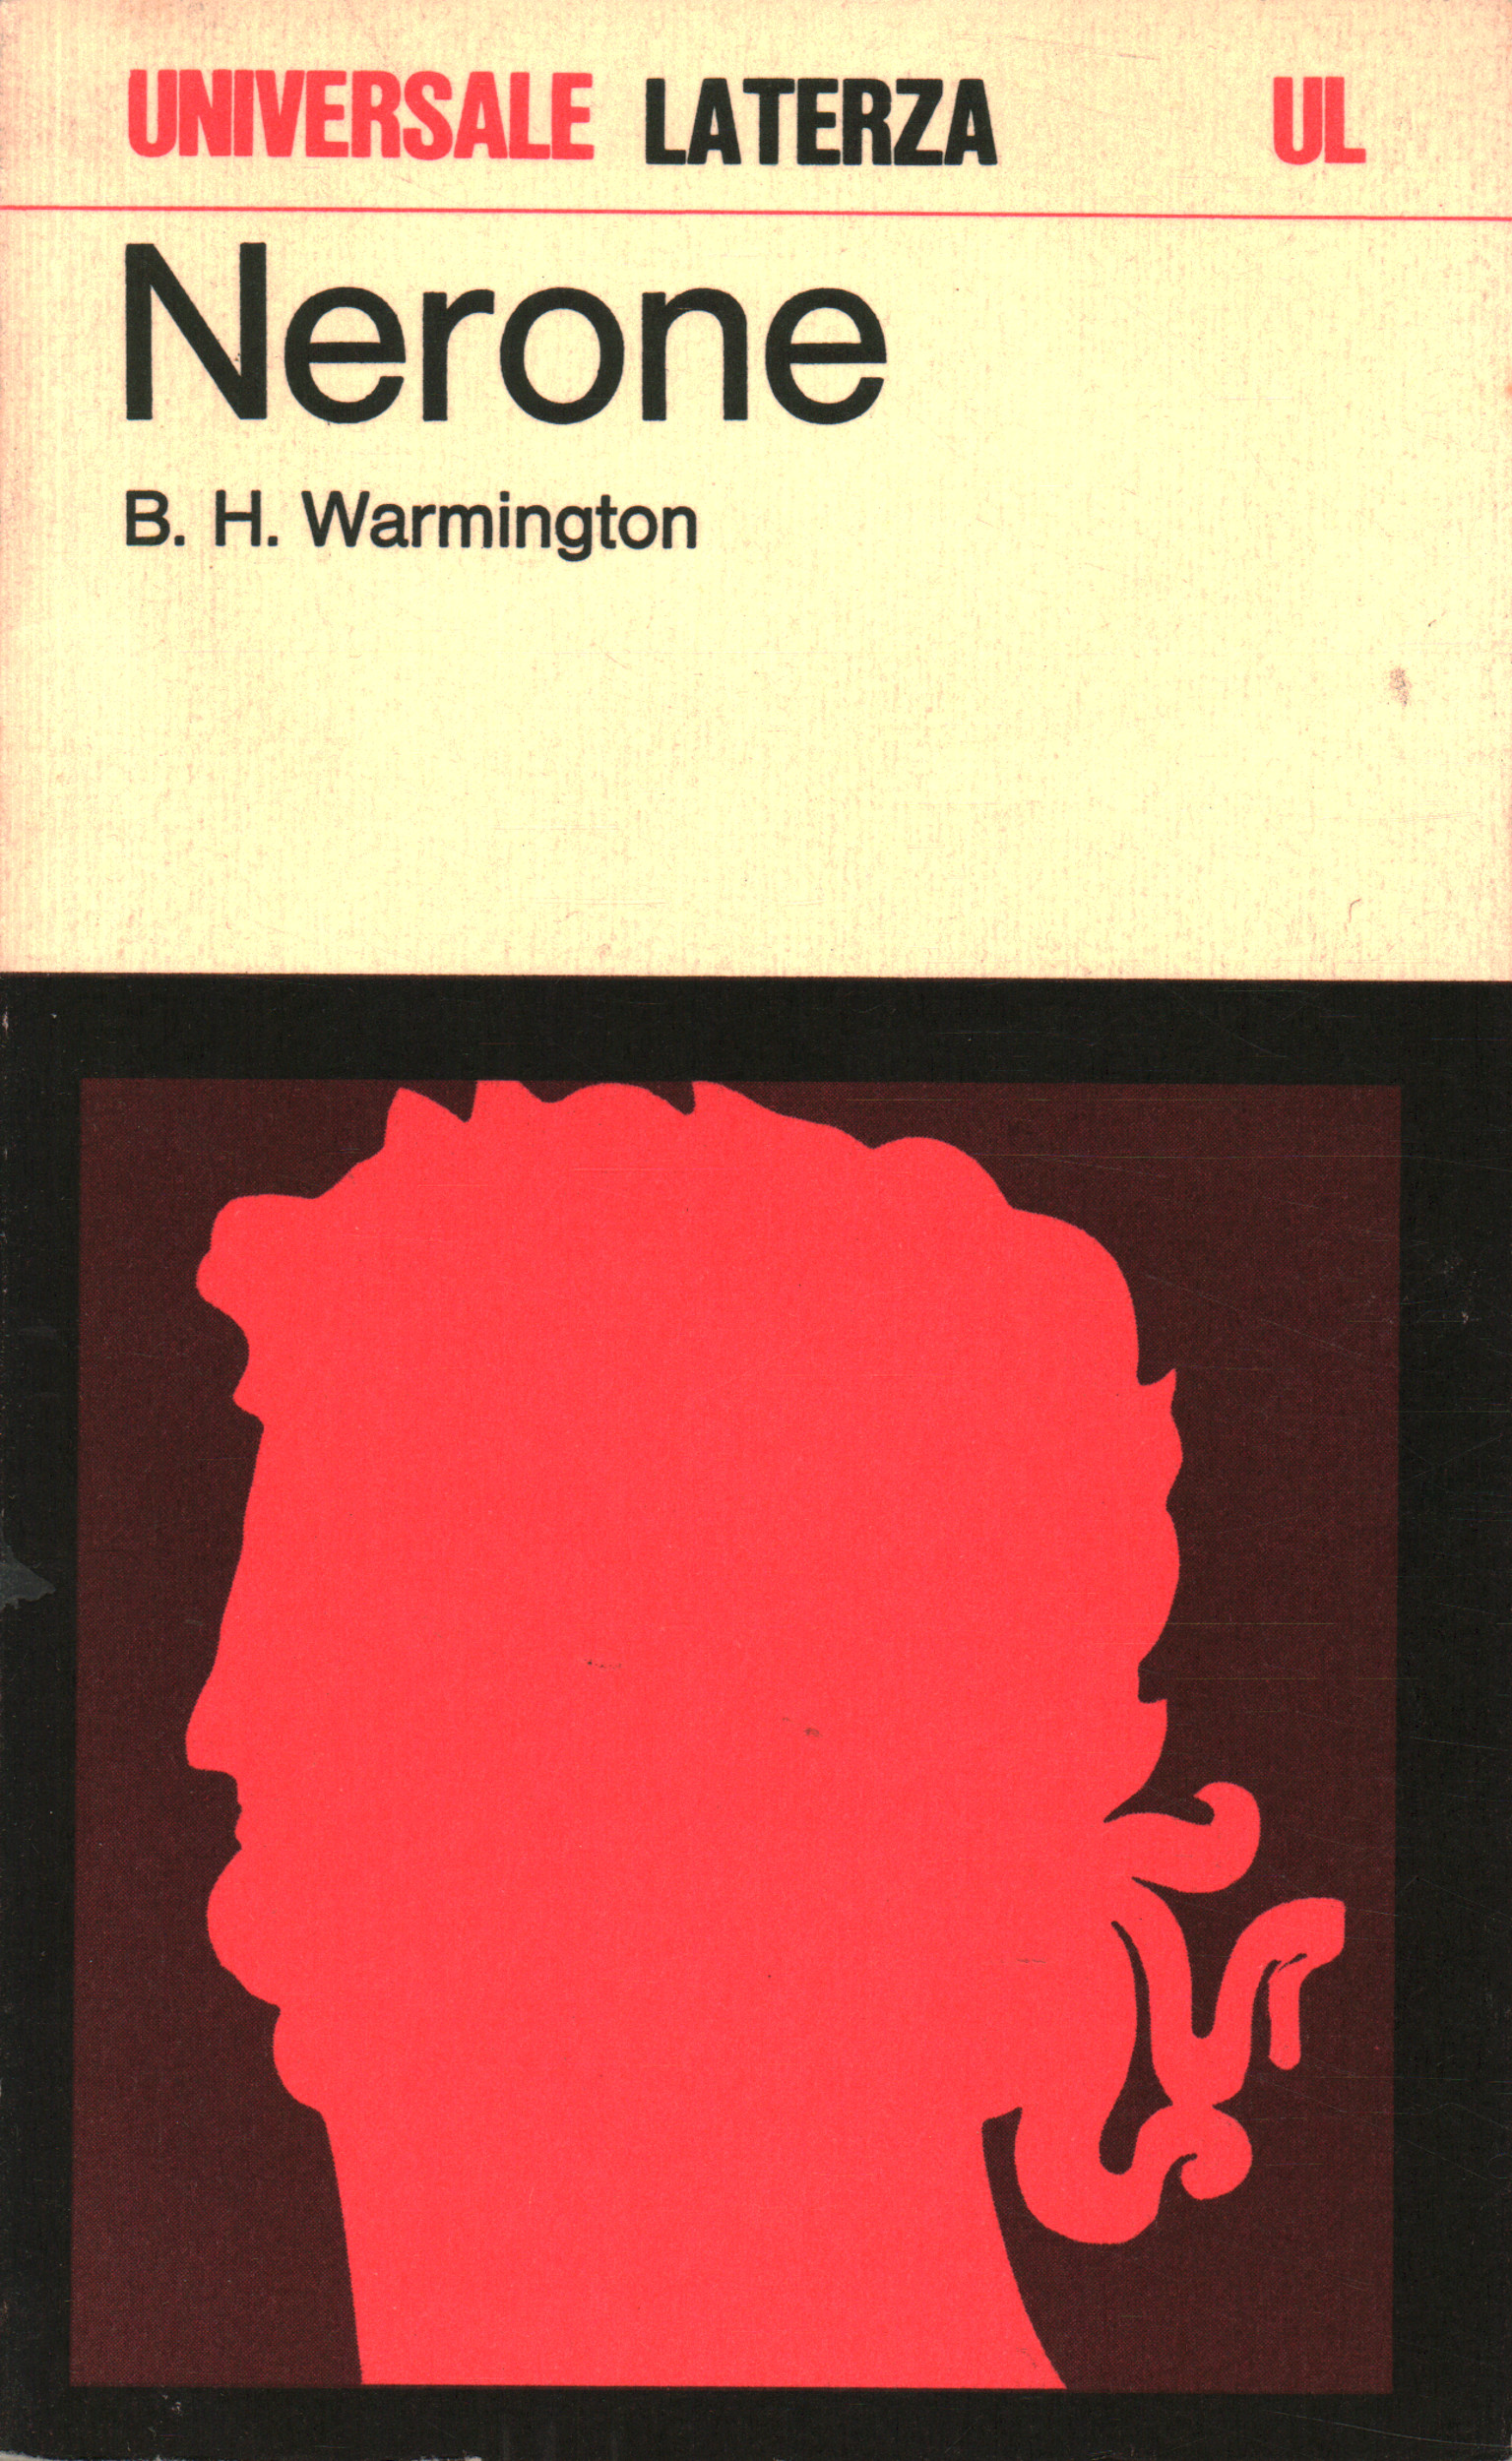 Nero, B. H. Warmington